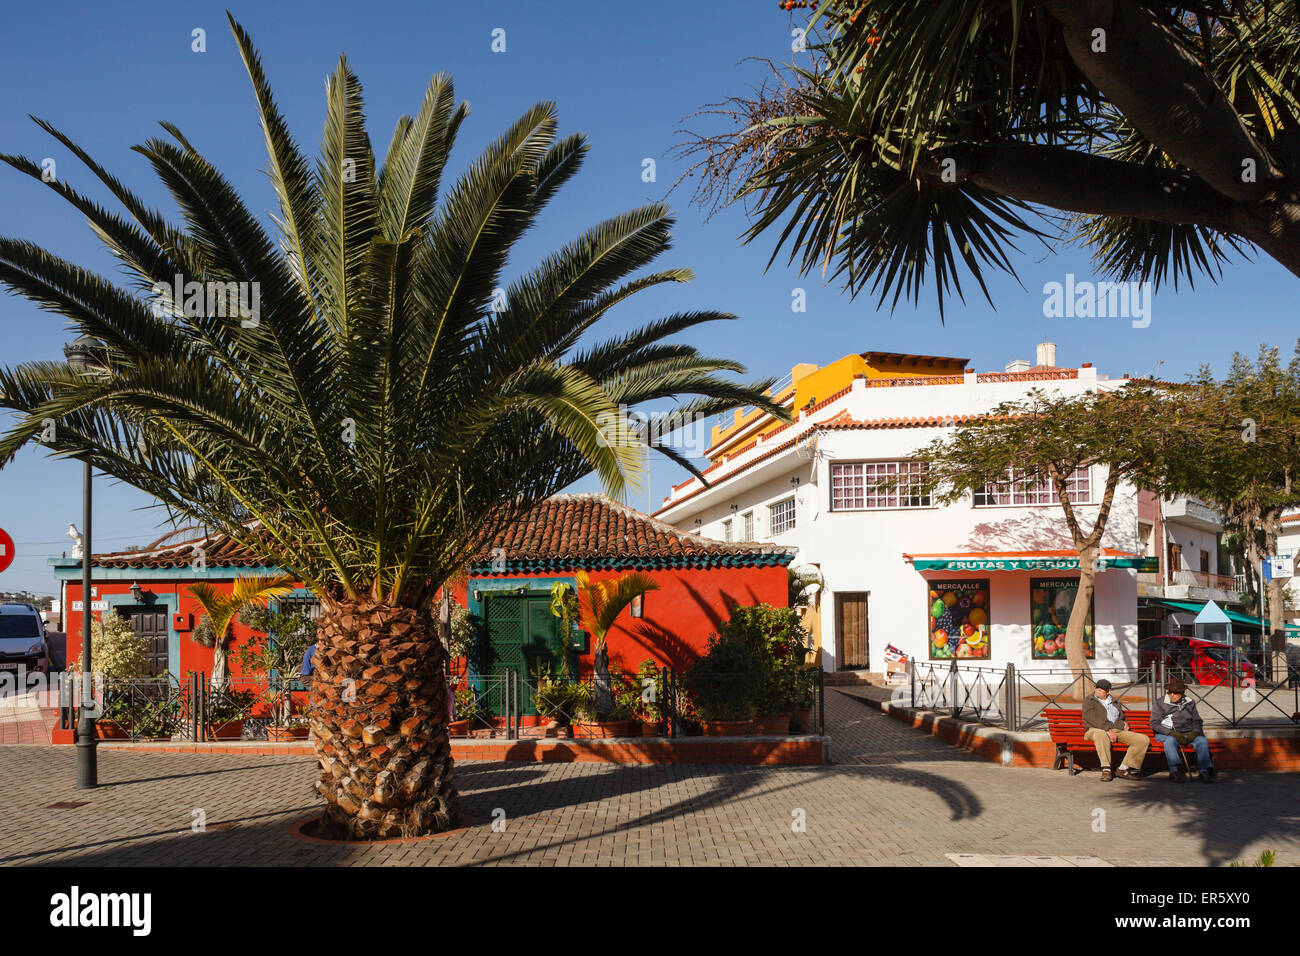 Plaza Ramon j. Figueroa, piazza del villaggio con Palm tree, Valle de Guerra, villaggio nei pressi di Tacoronte, Tenerife, Isole Canarie, Spagna Foto Stock